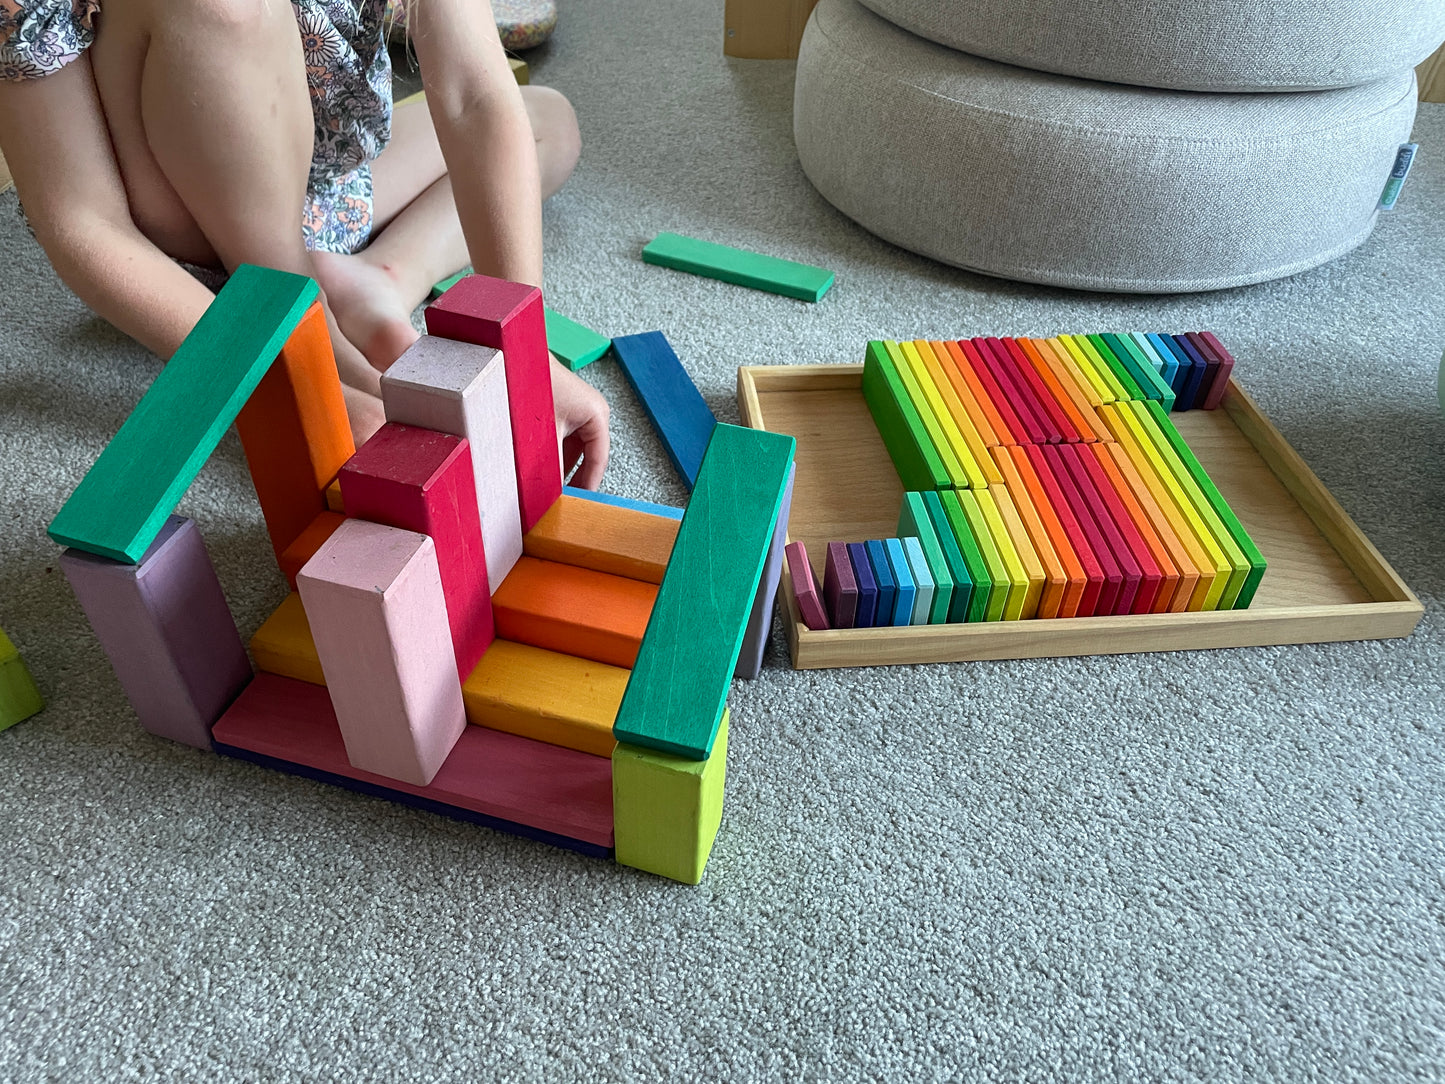 
                  
                    Gluckskafer Wooden Blocks - Rainbow Building Slats in Tray 64pcs
                  
                